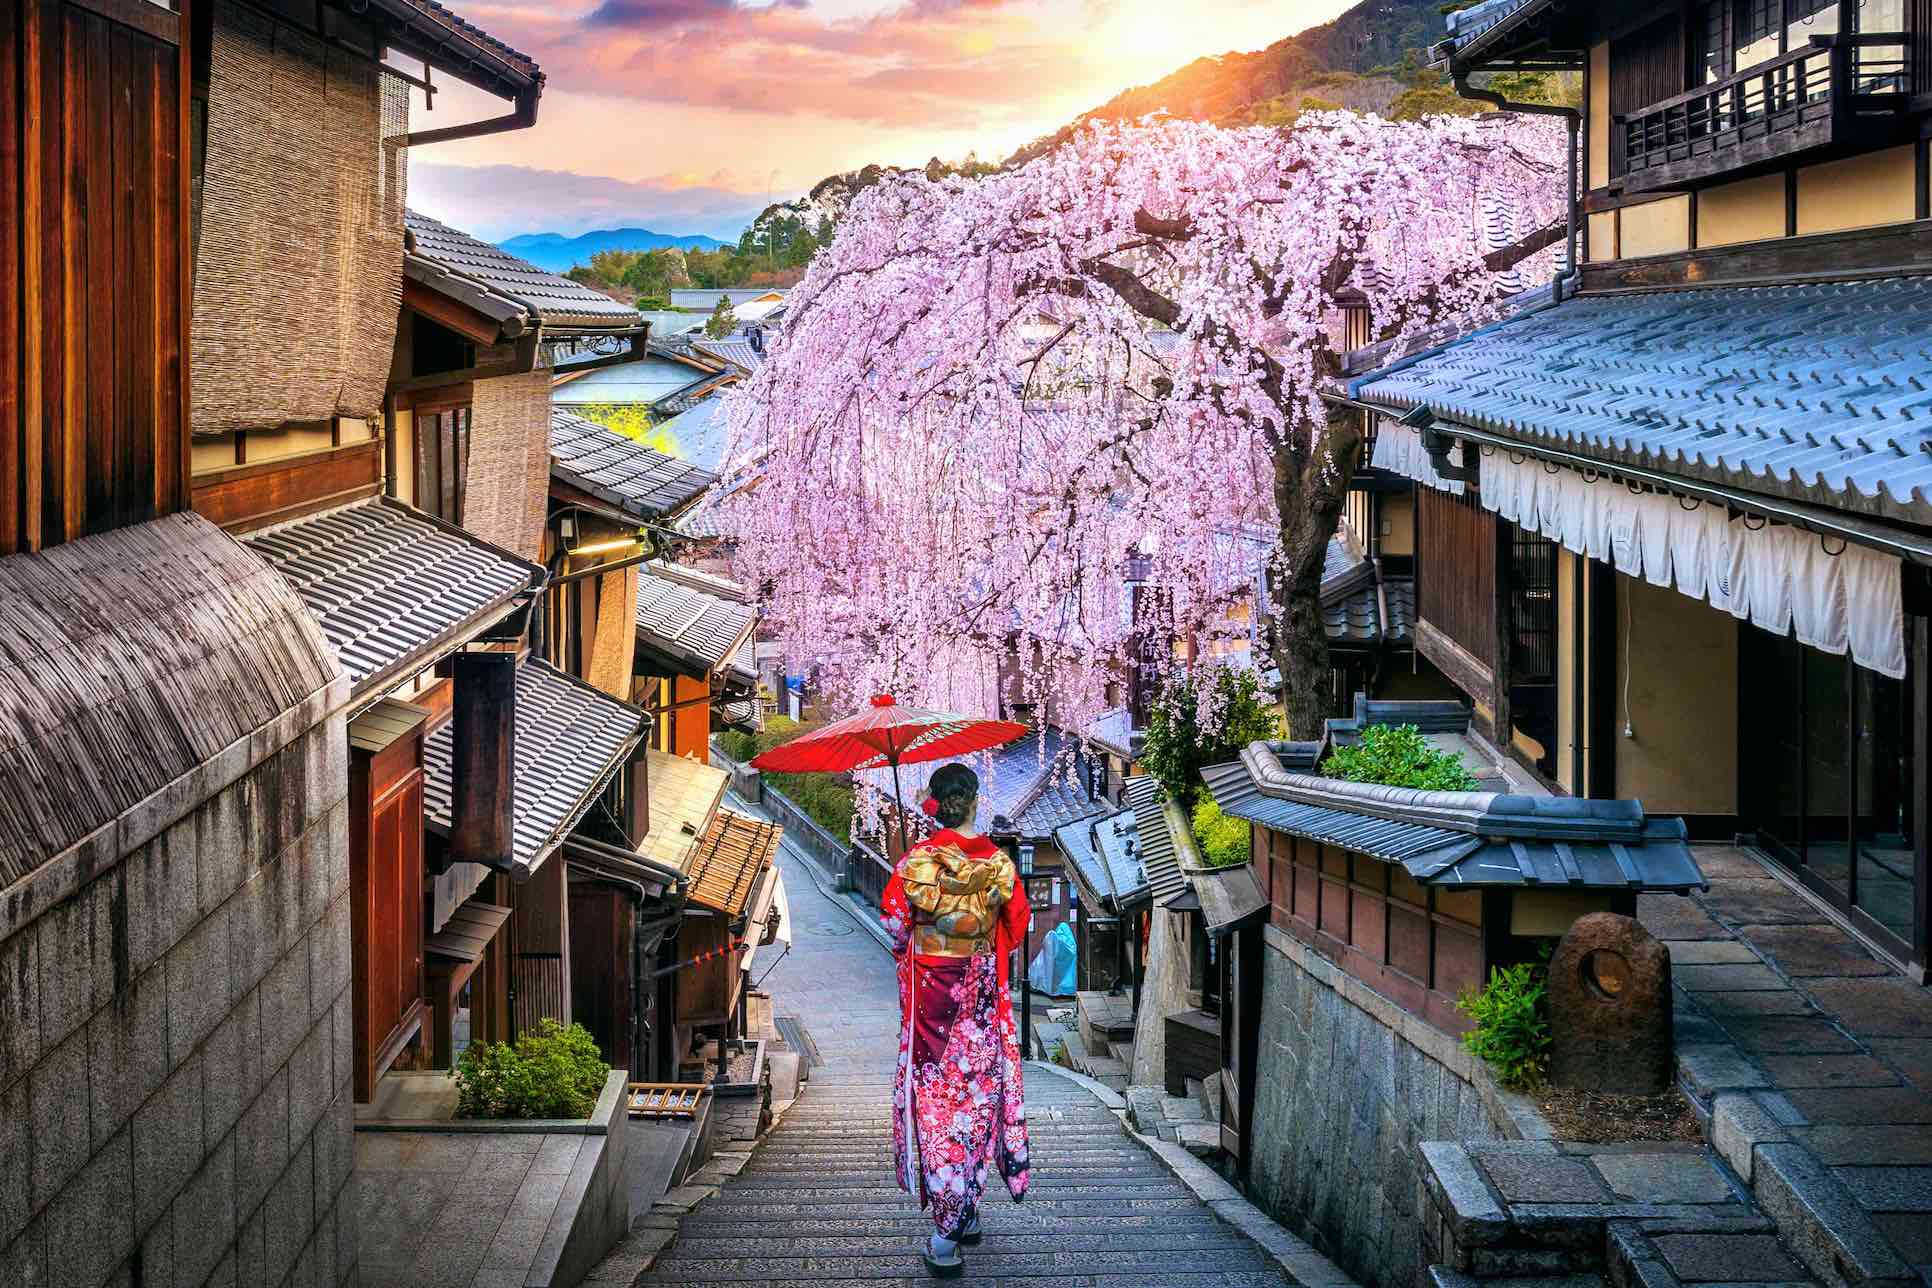 japan cultural places to visit